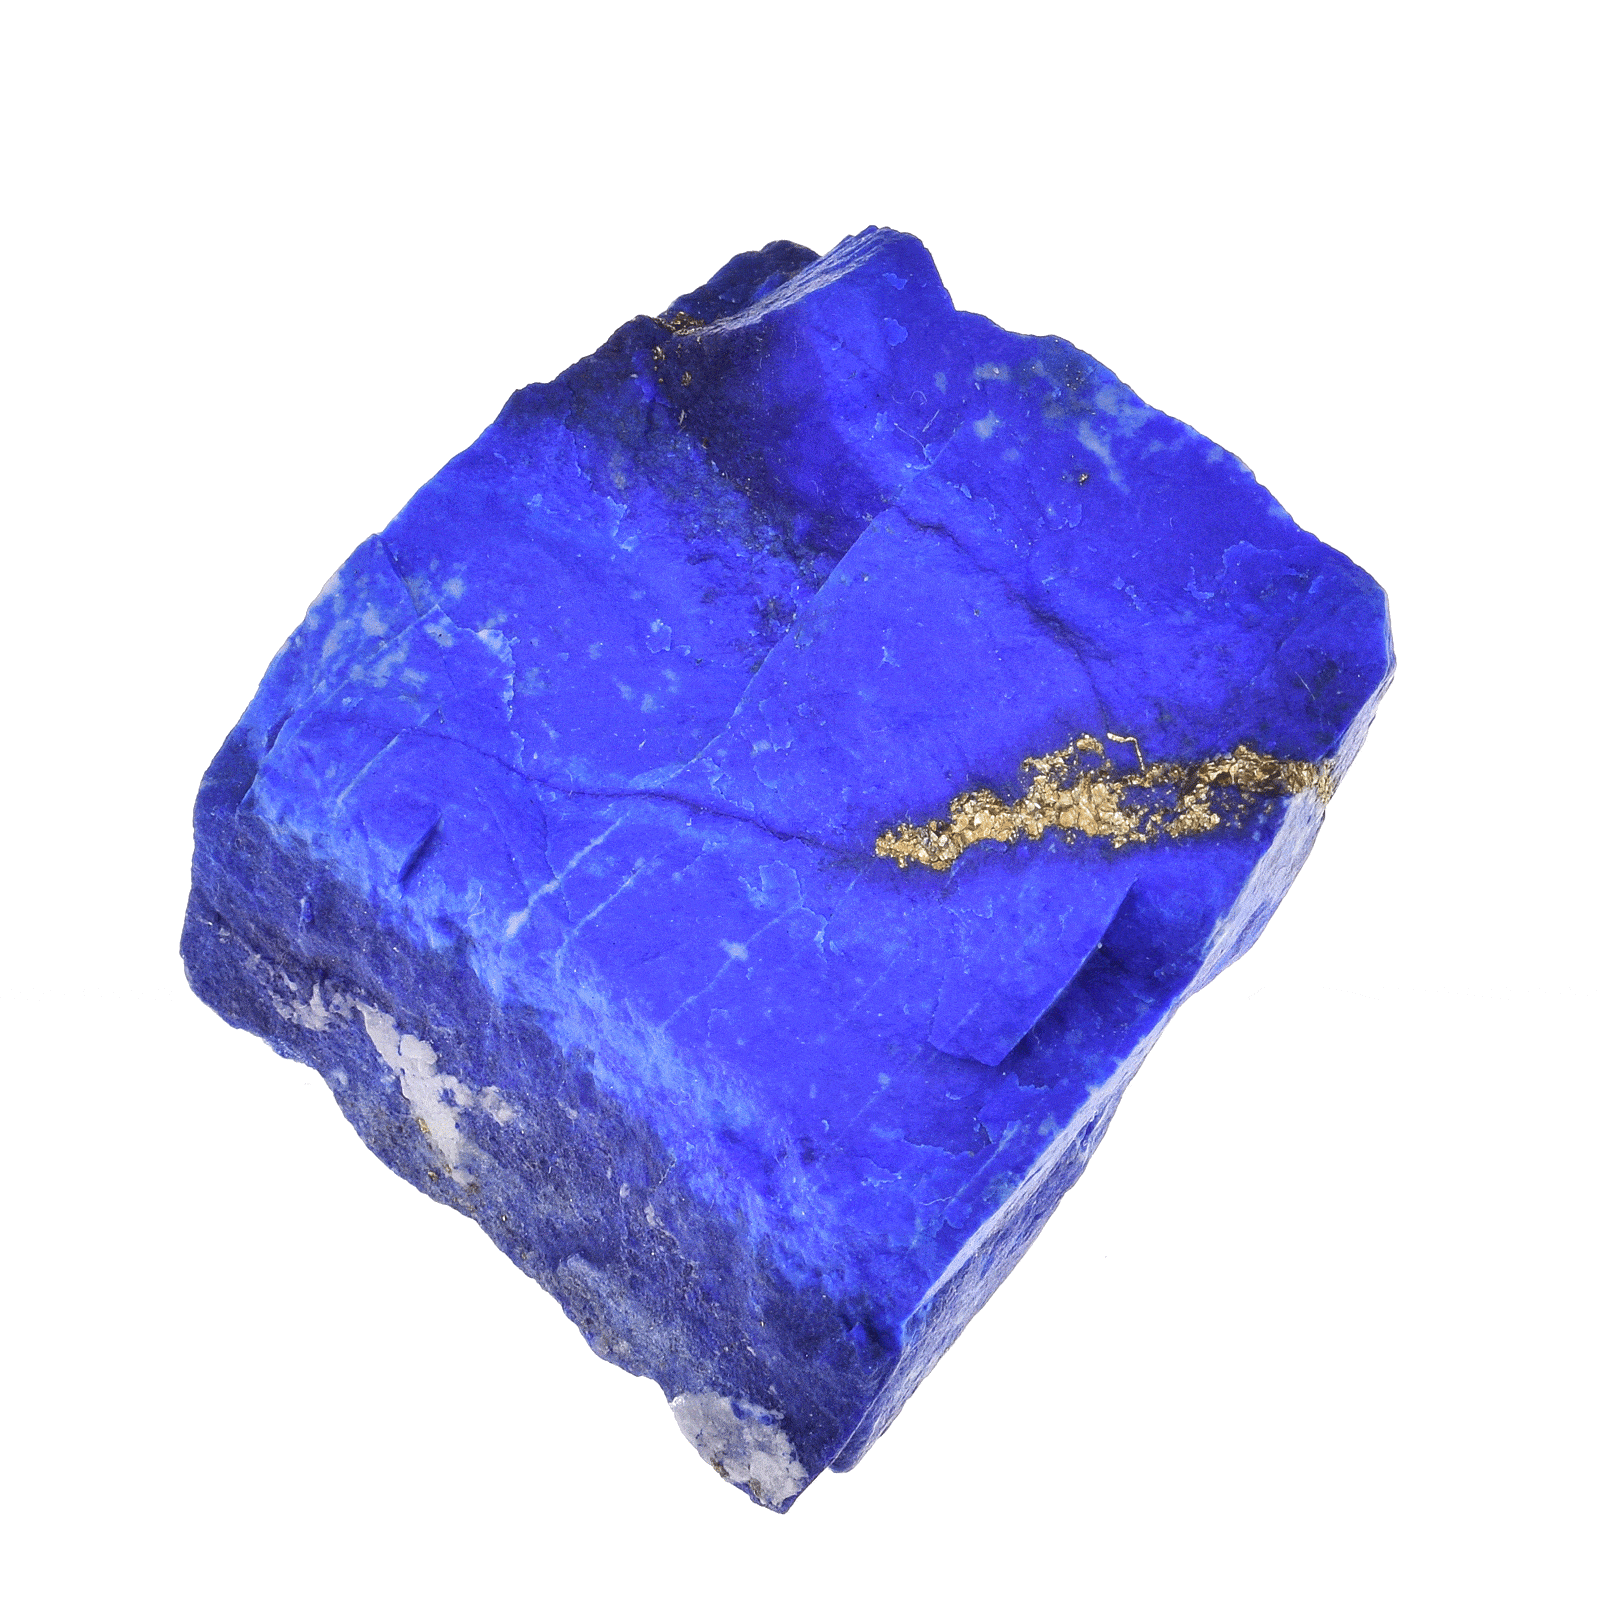 Ακατέργαστο κομμάτι φυσικής πέτρας Λάπι Λάζουλι εξαιρετικής ποιότητας, μεγέθους 4,5cm. Αγοράστε online shop.